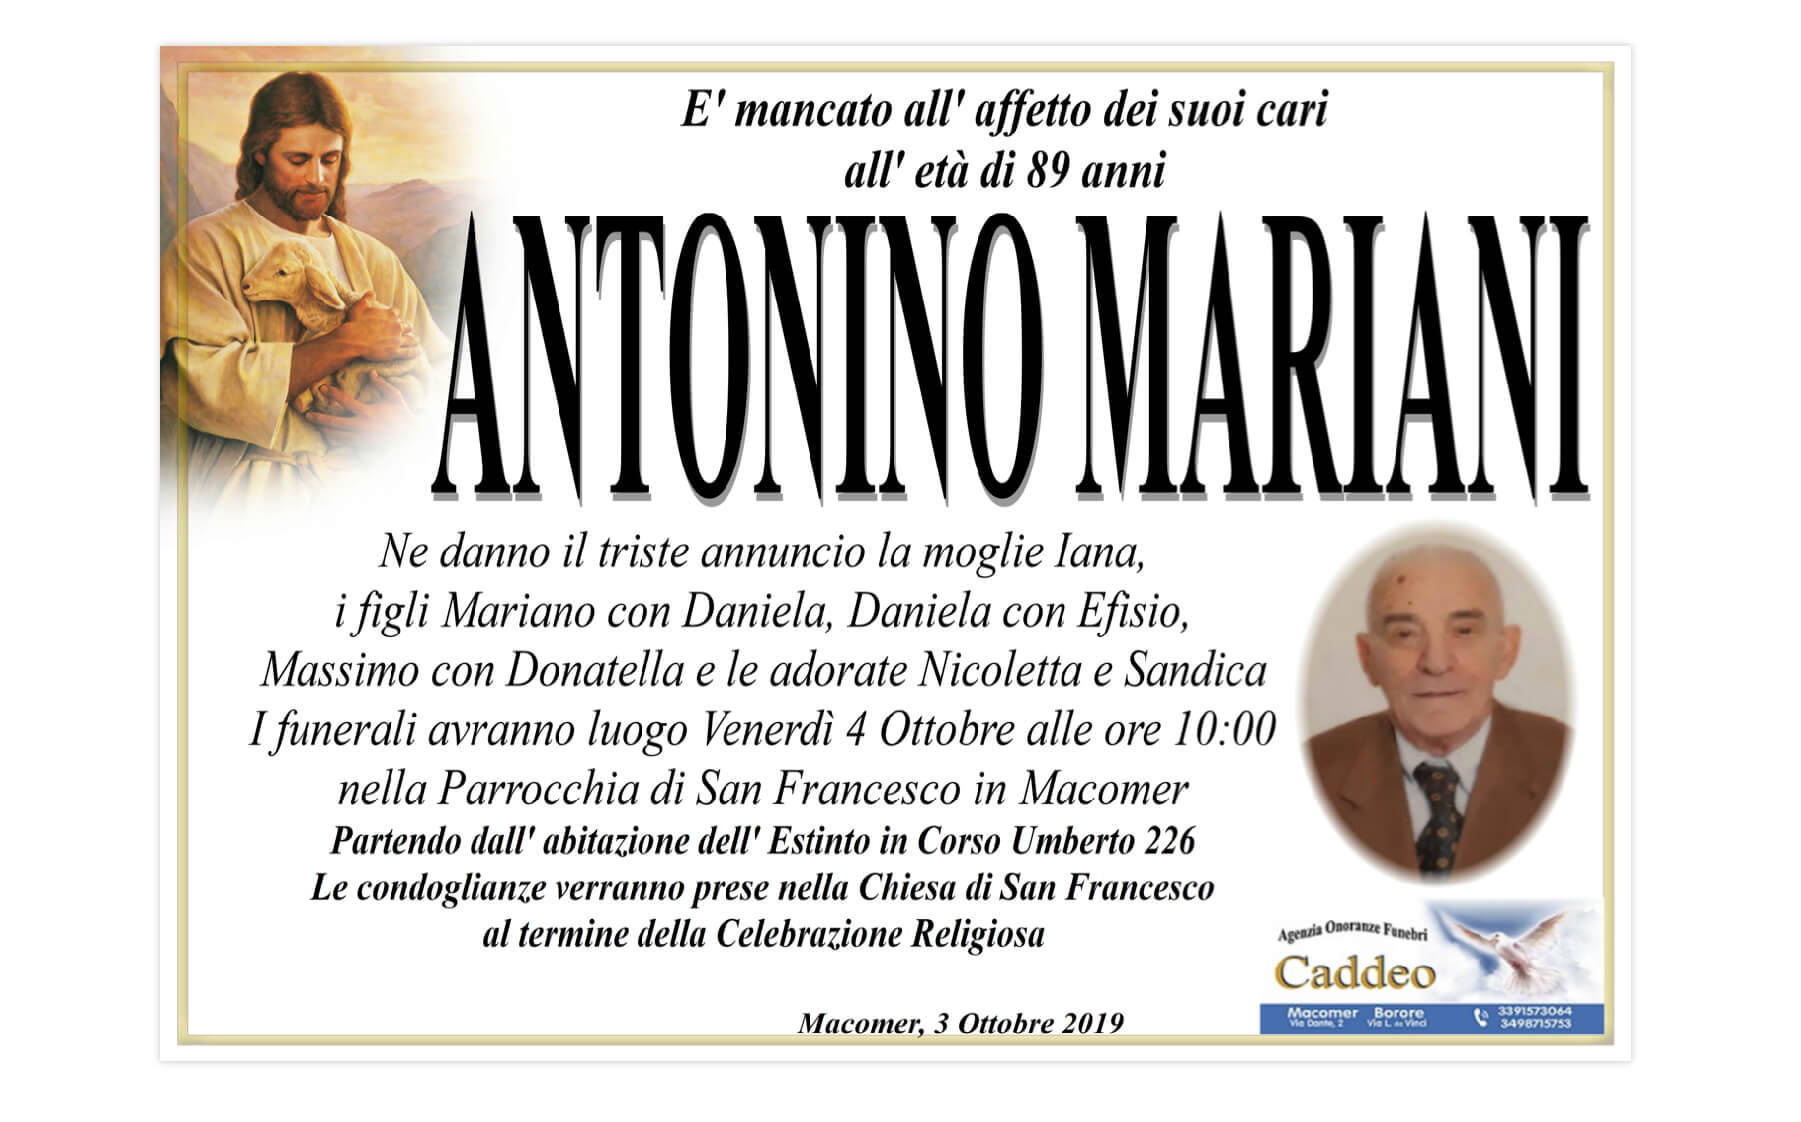 Antonino Mariani